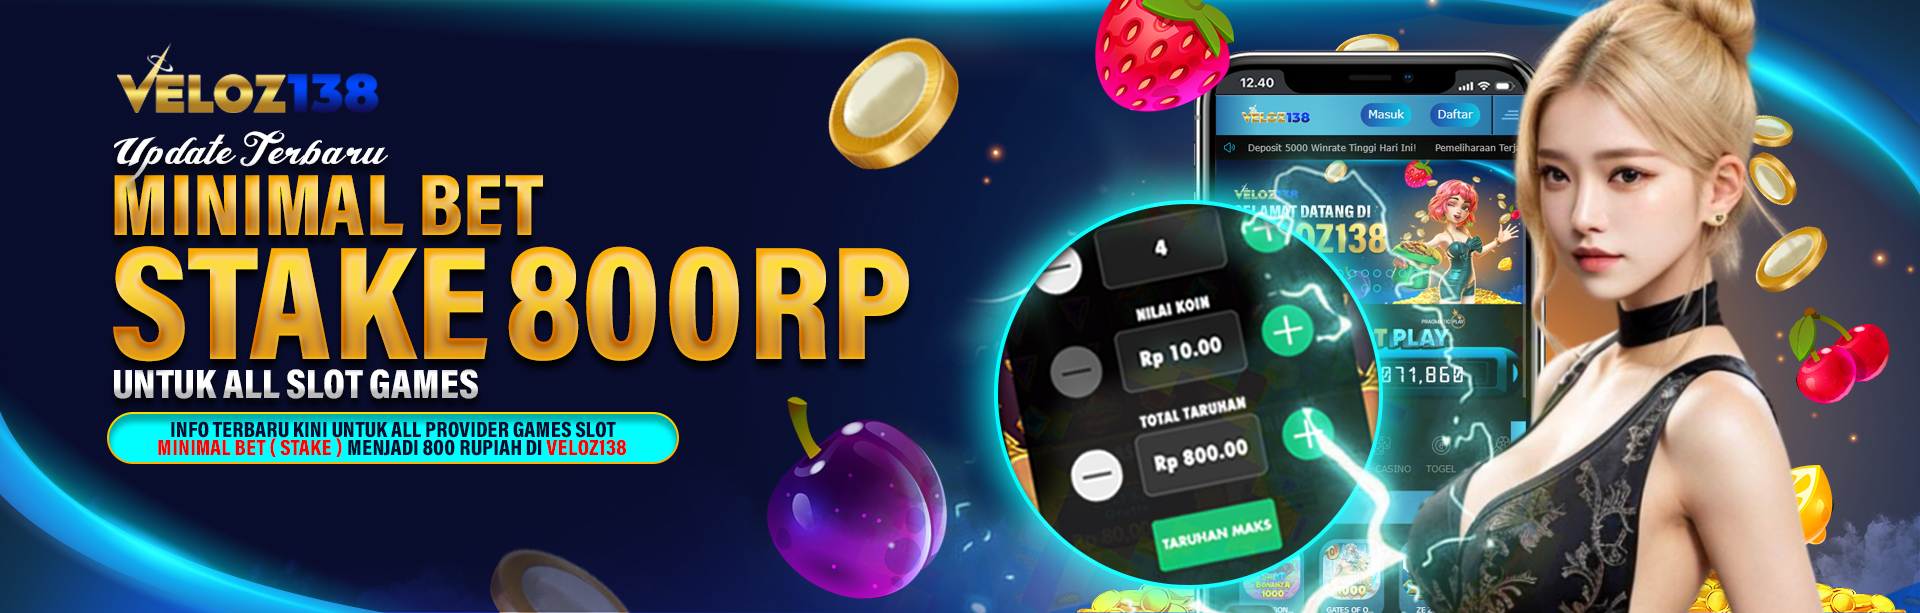 Update Terbaru Minimal Bet All Slot Games 800 Rupiah 